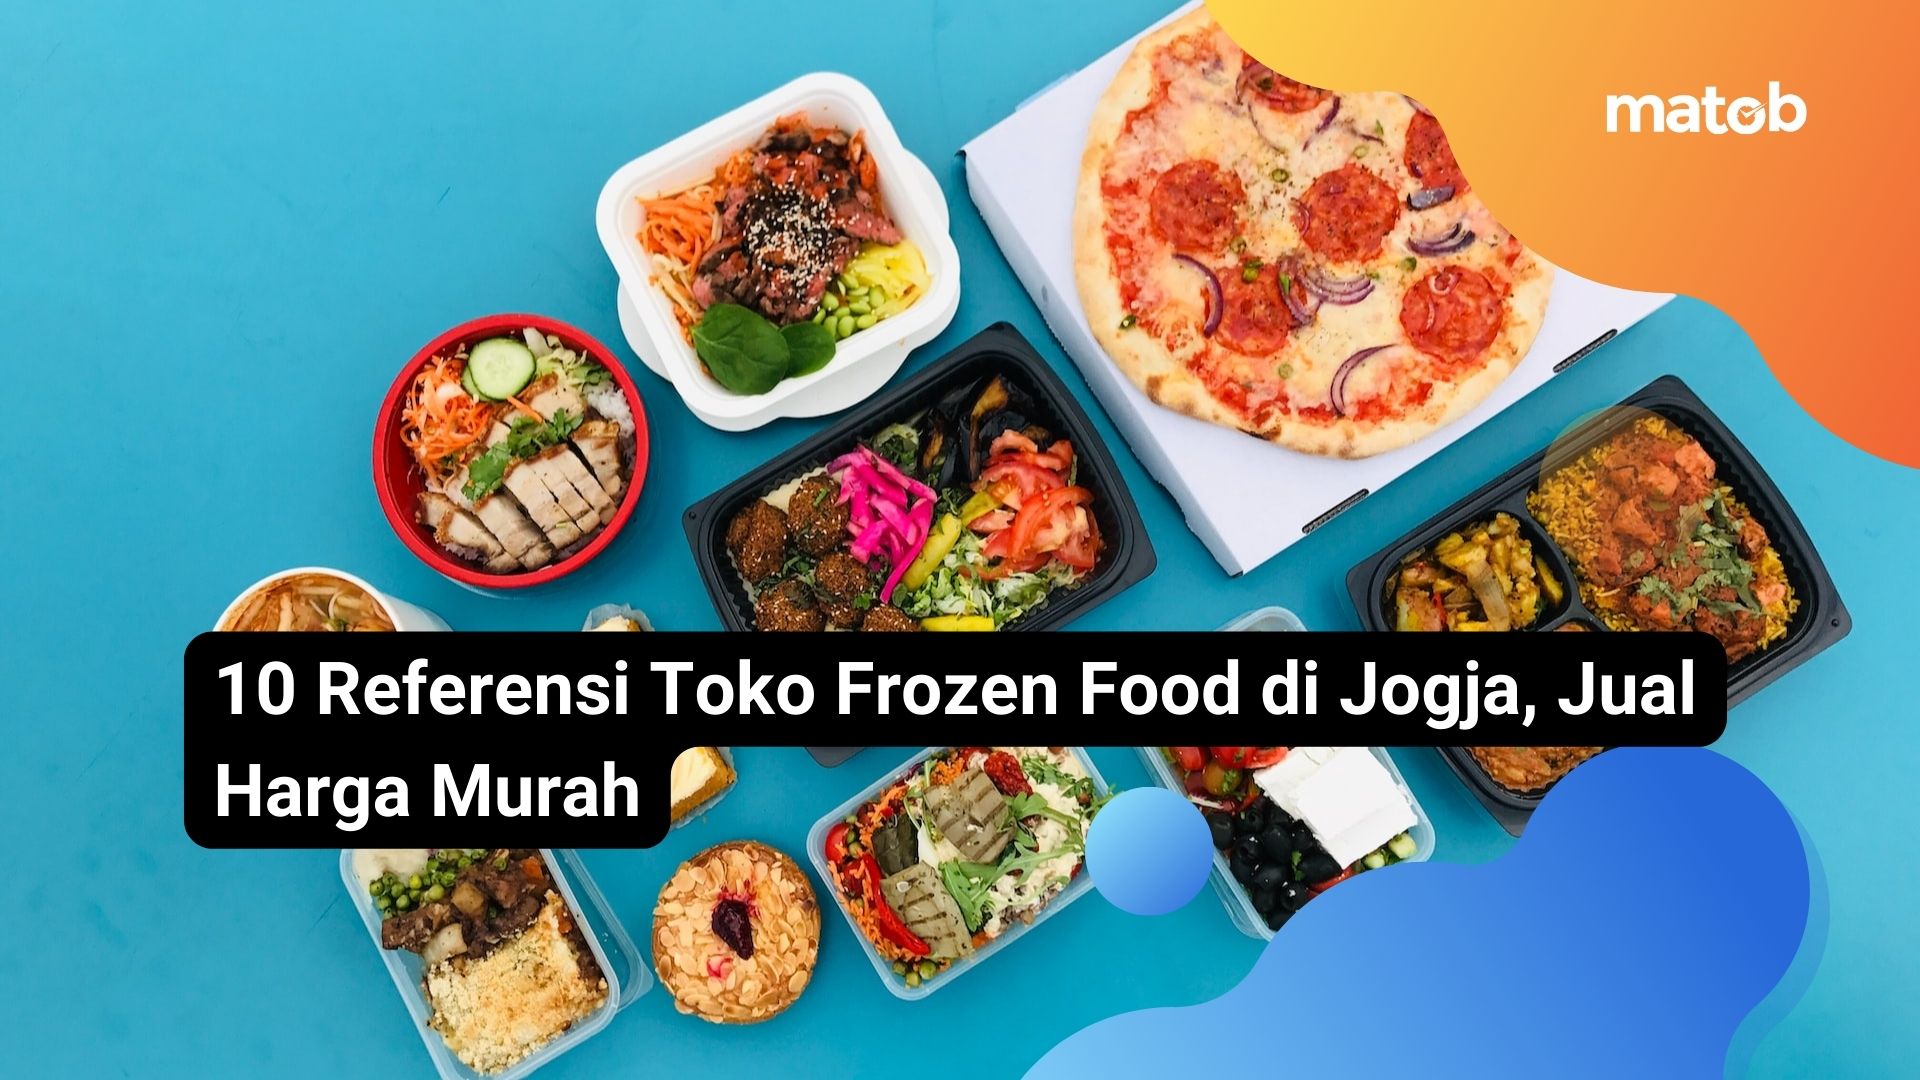 10 Referensi Toko Frozen Food di Jogja, Jual Harga Murah